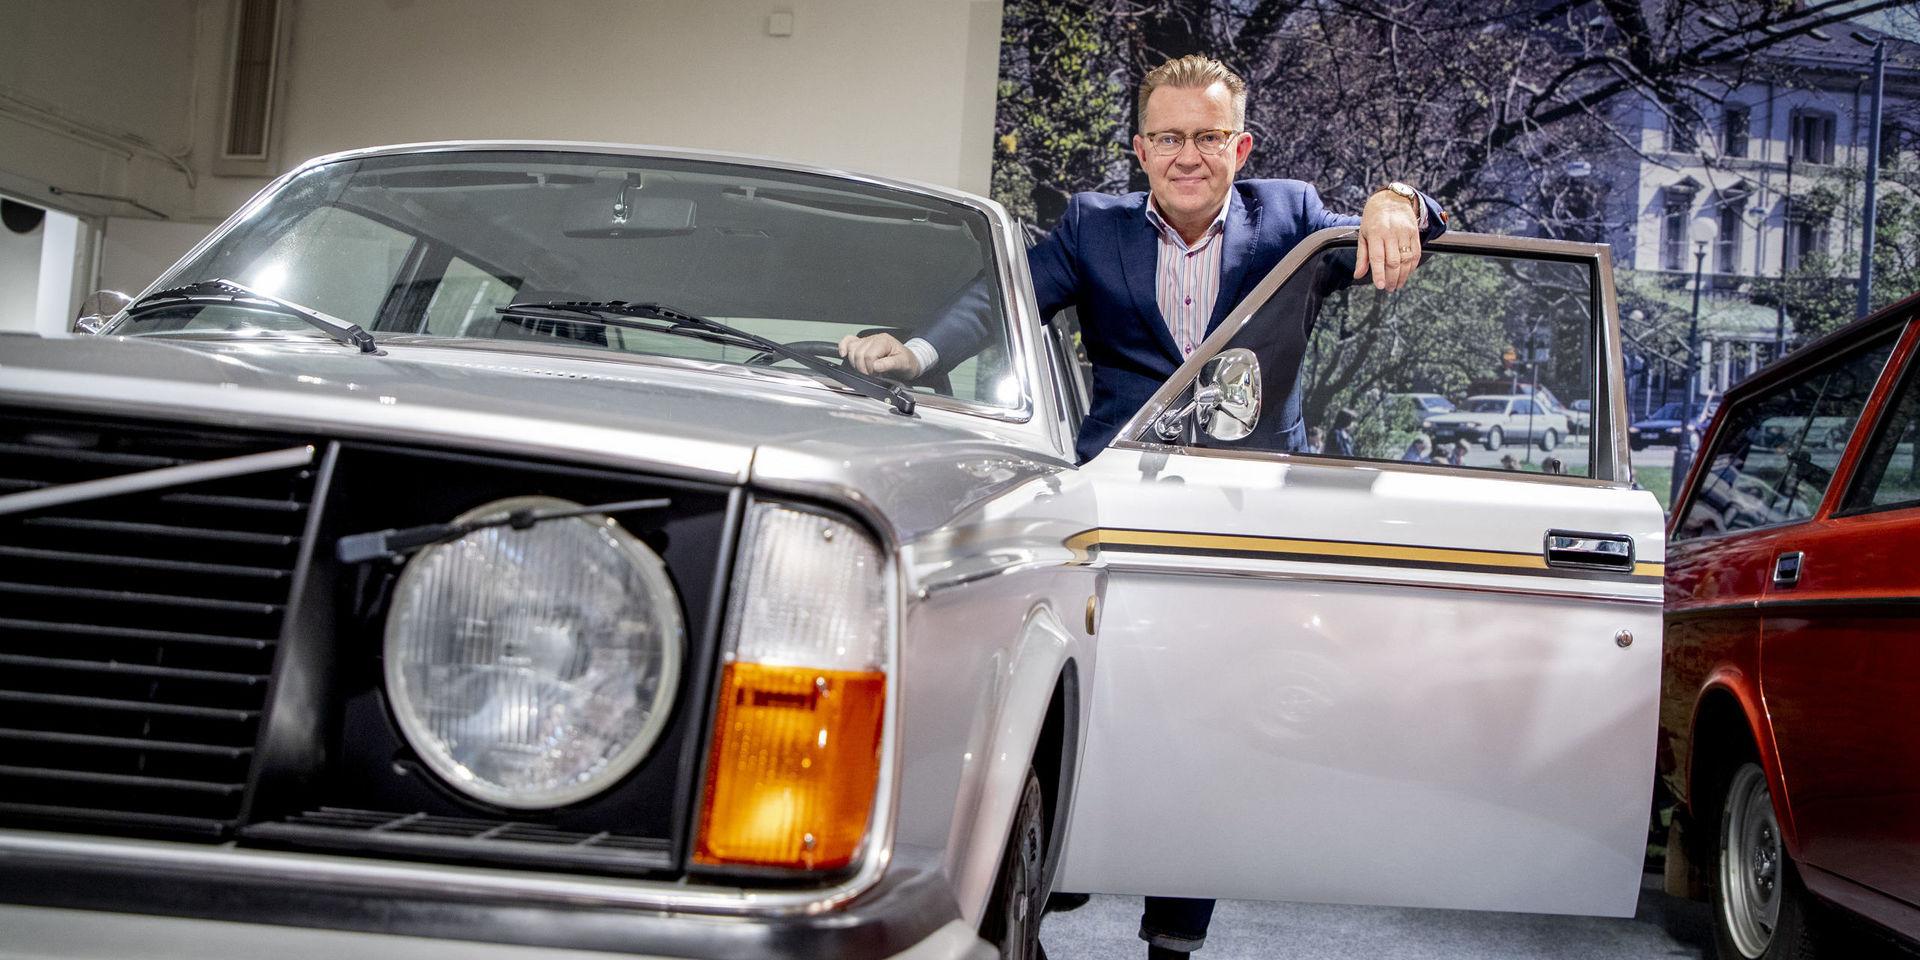 Juvelen i kronan. 240:n är personbilen som Volvo sålt mest av, säger Per-Åke Fröberg.